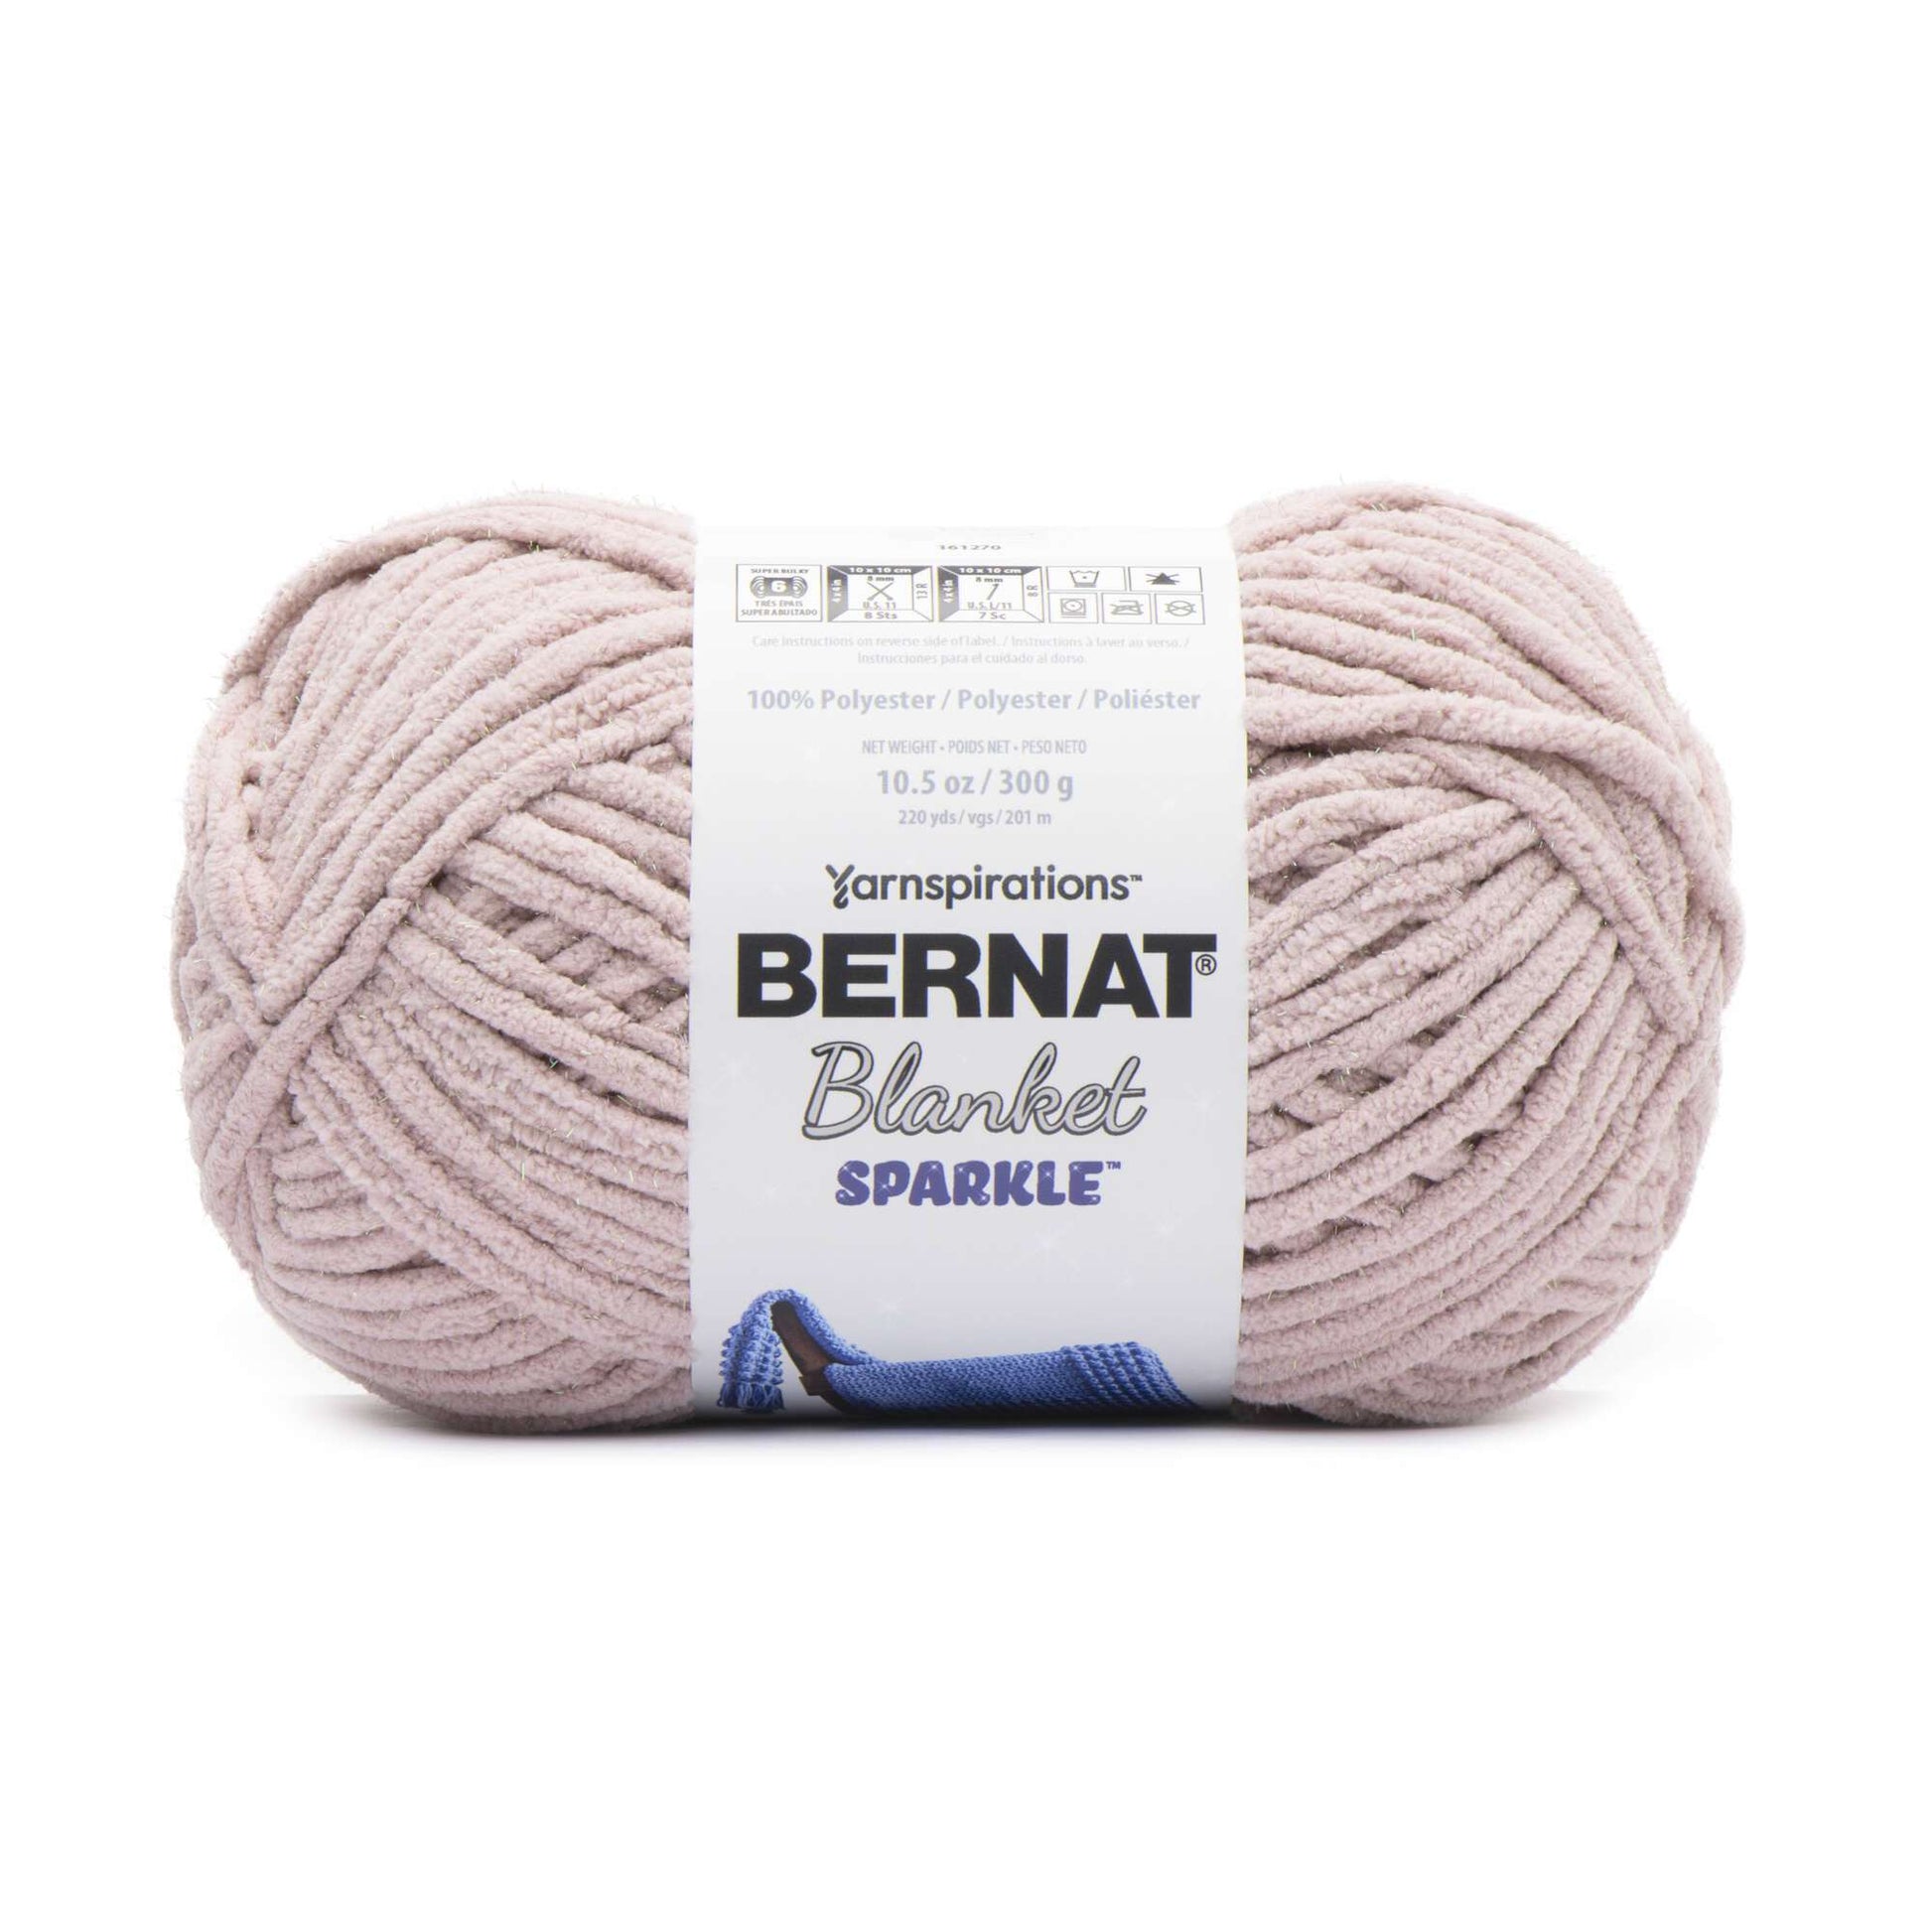 Bernat Blanket Sparkle Yarn (300g/10.5oz)